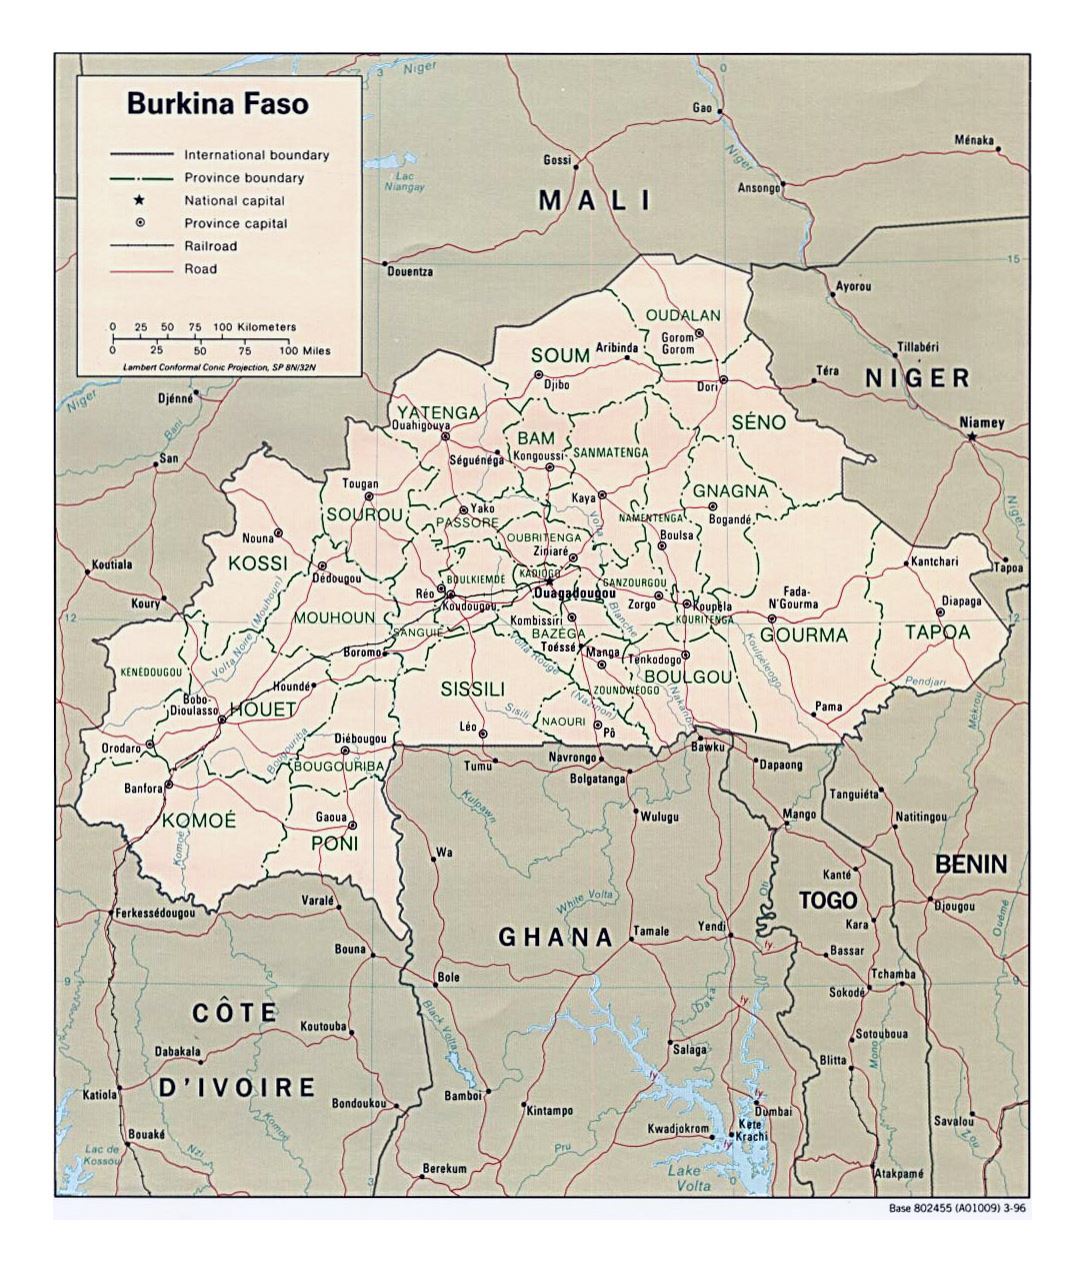 Детальная политическая и административная карта Буркина-Фасо с дорогами, железными дорогами и крупными городами - 1996